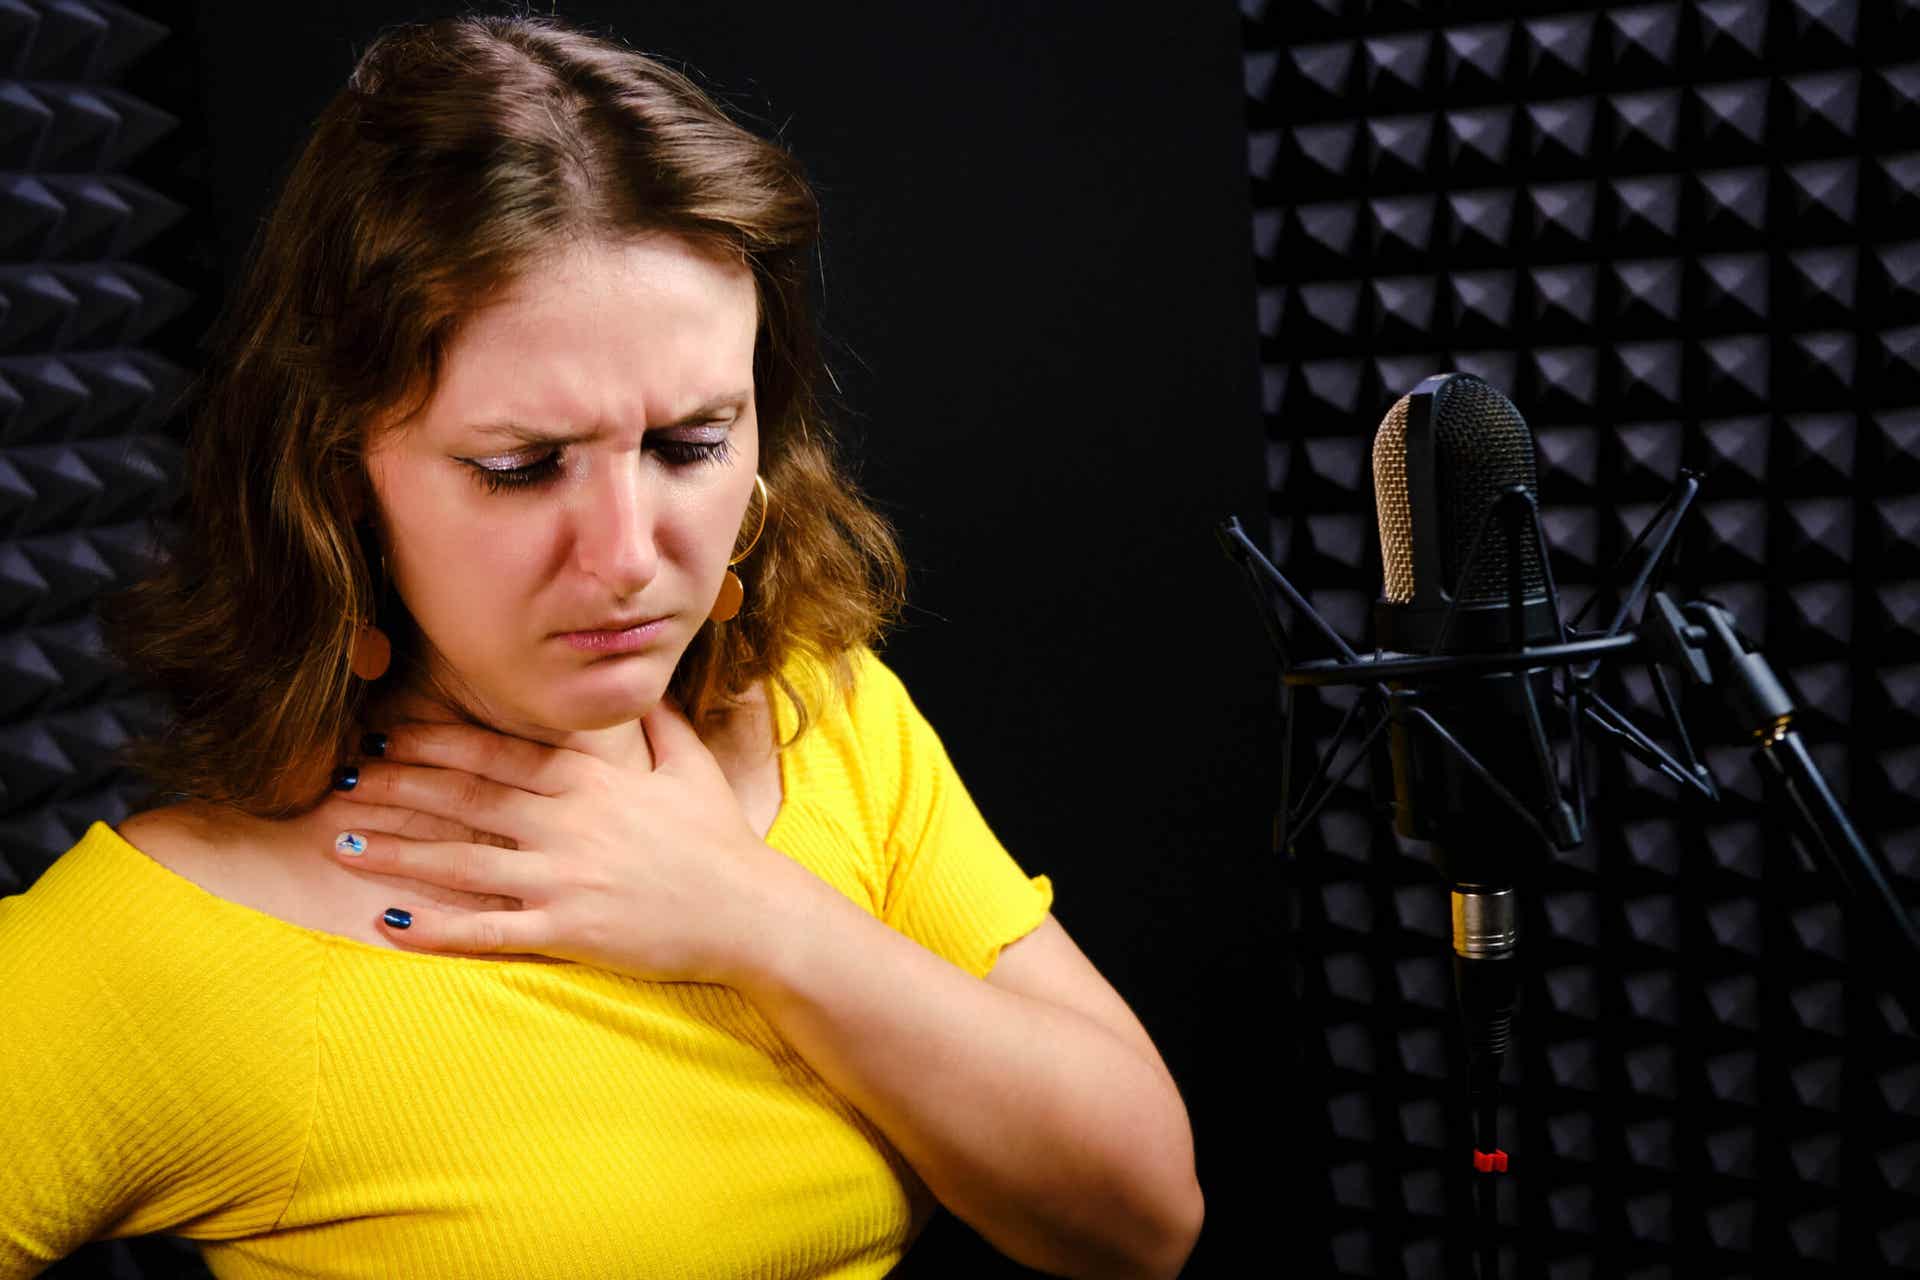 Femme qui a mal a la gorge au moment de chanter. 